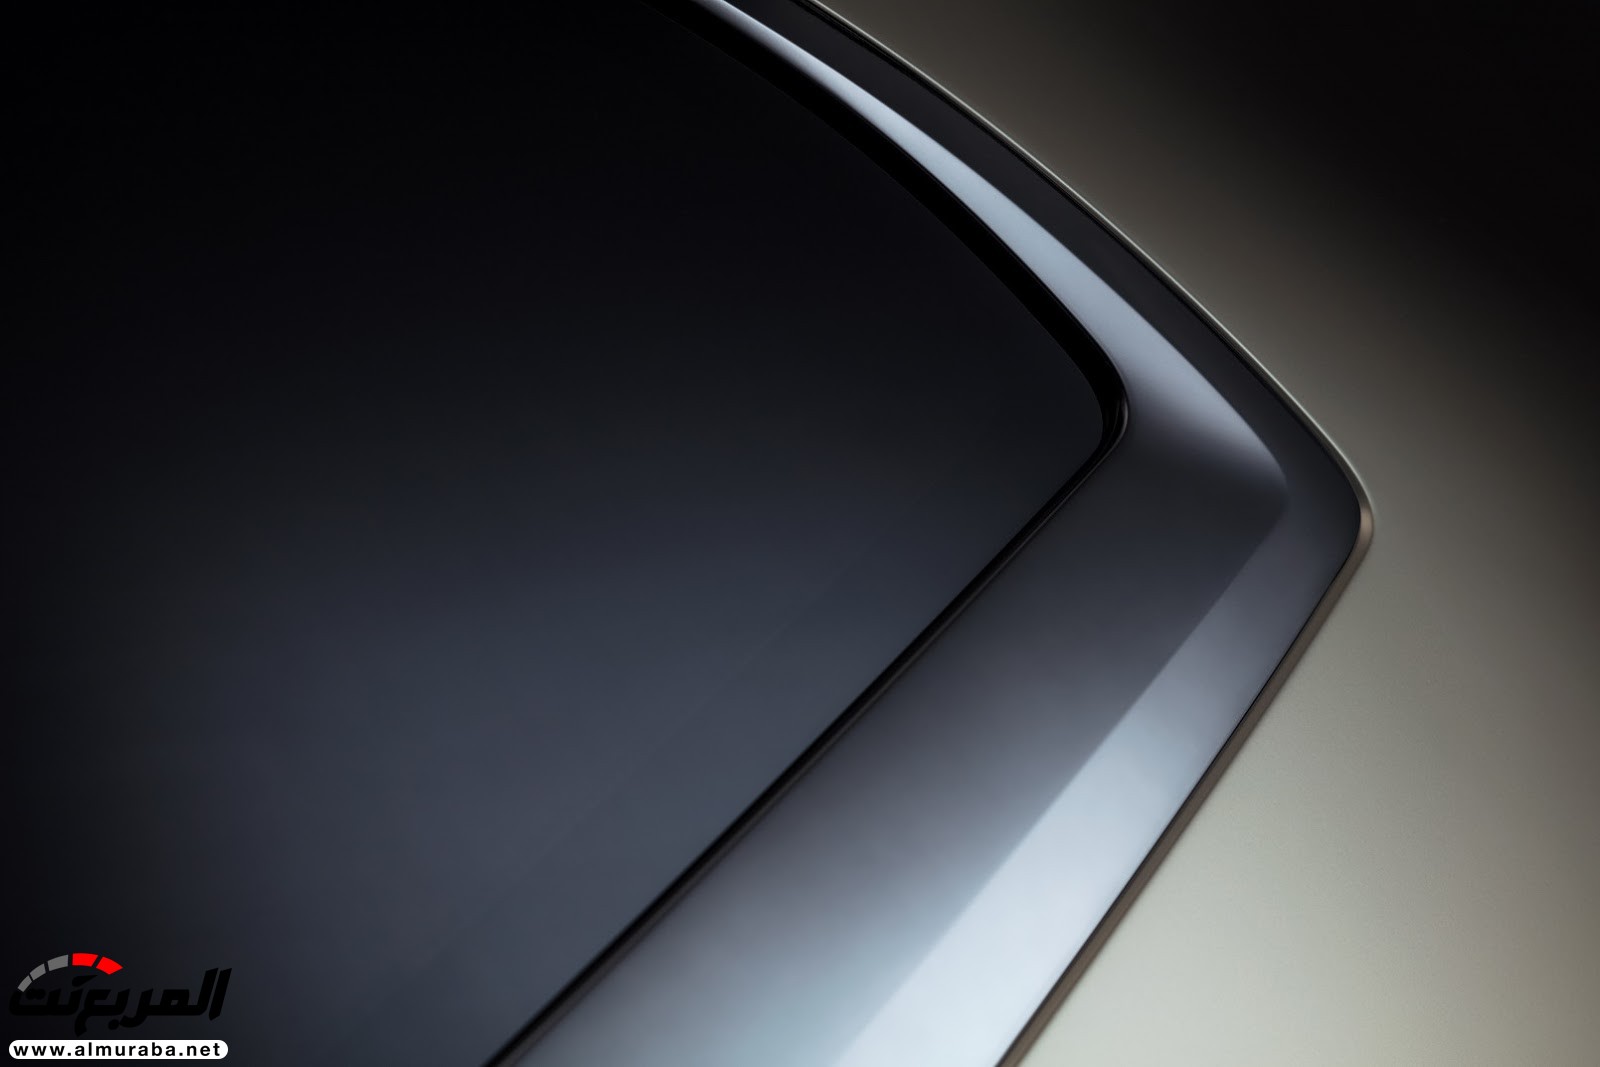 "إنفينيتي" تكشف عن كونسيبت سيارتها الضخمة QX80 مونوجراف بنيويورك 33